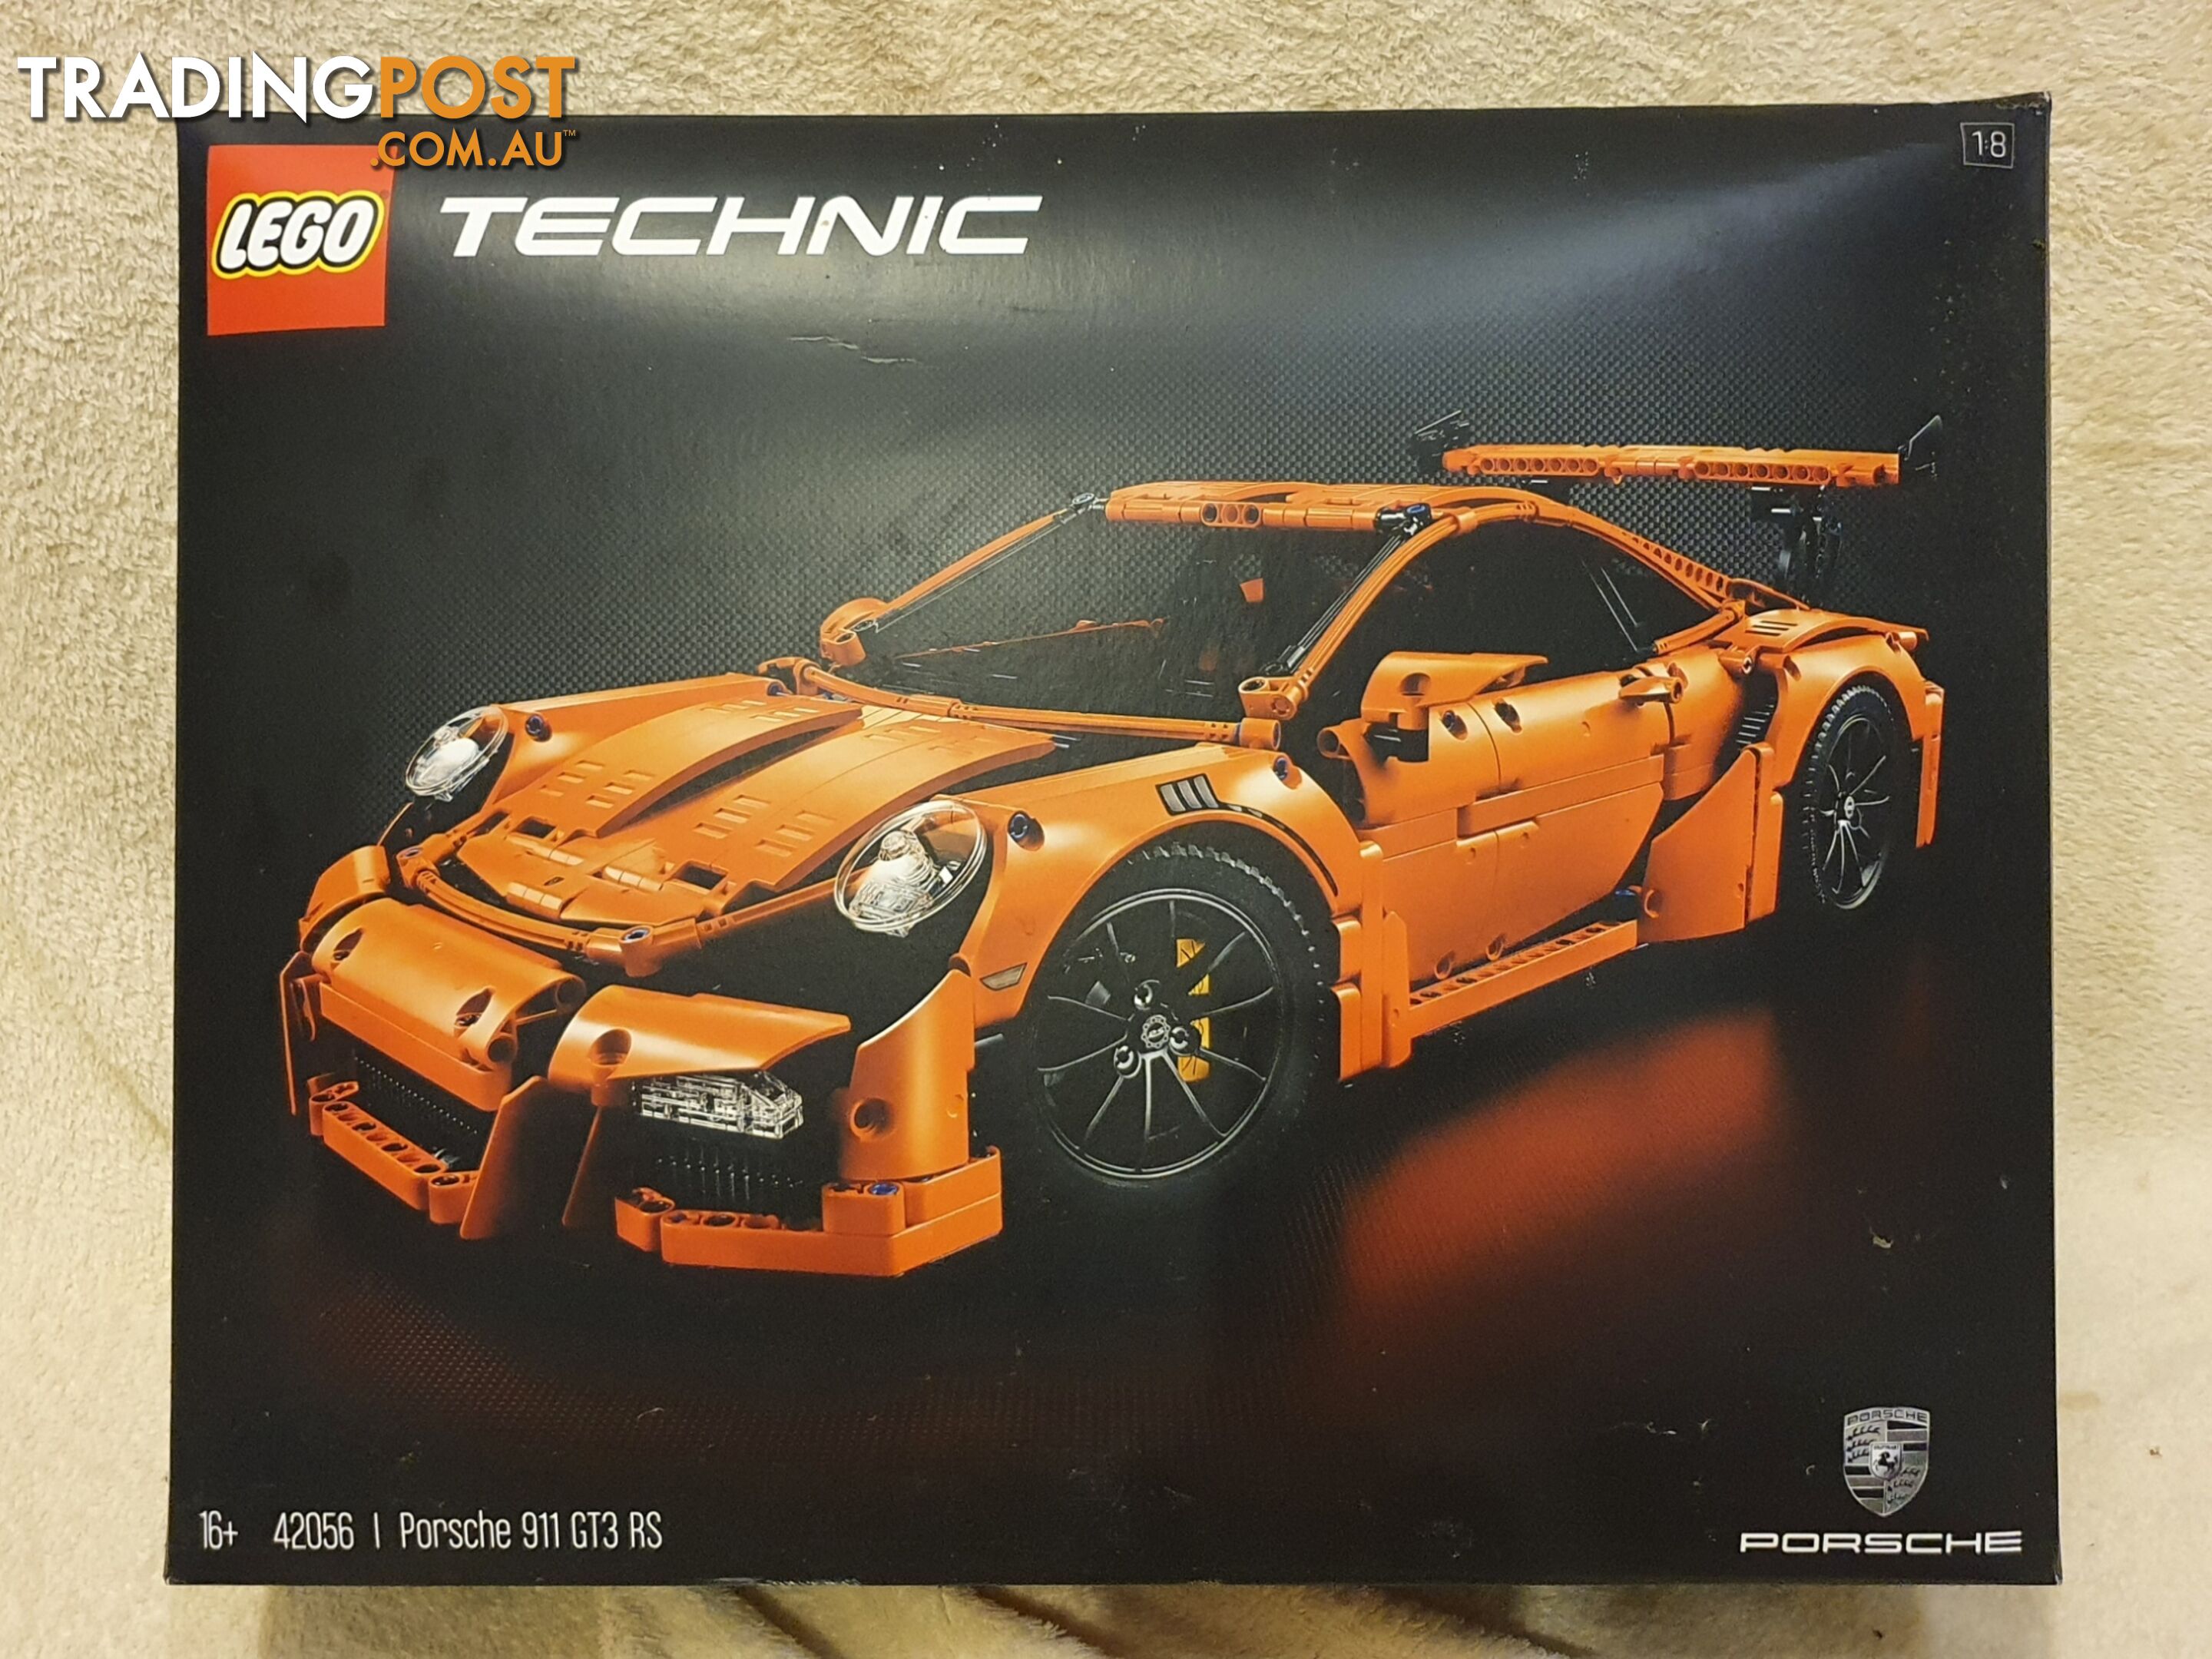 LEGO TECHNIC: Porsche 911 GT3 RS (42056) retired model